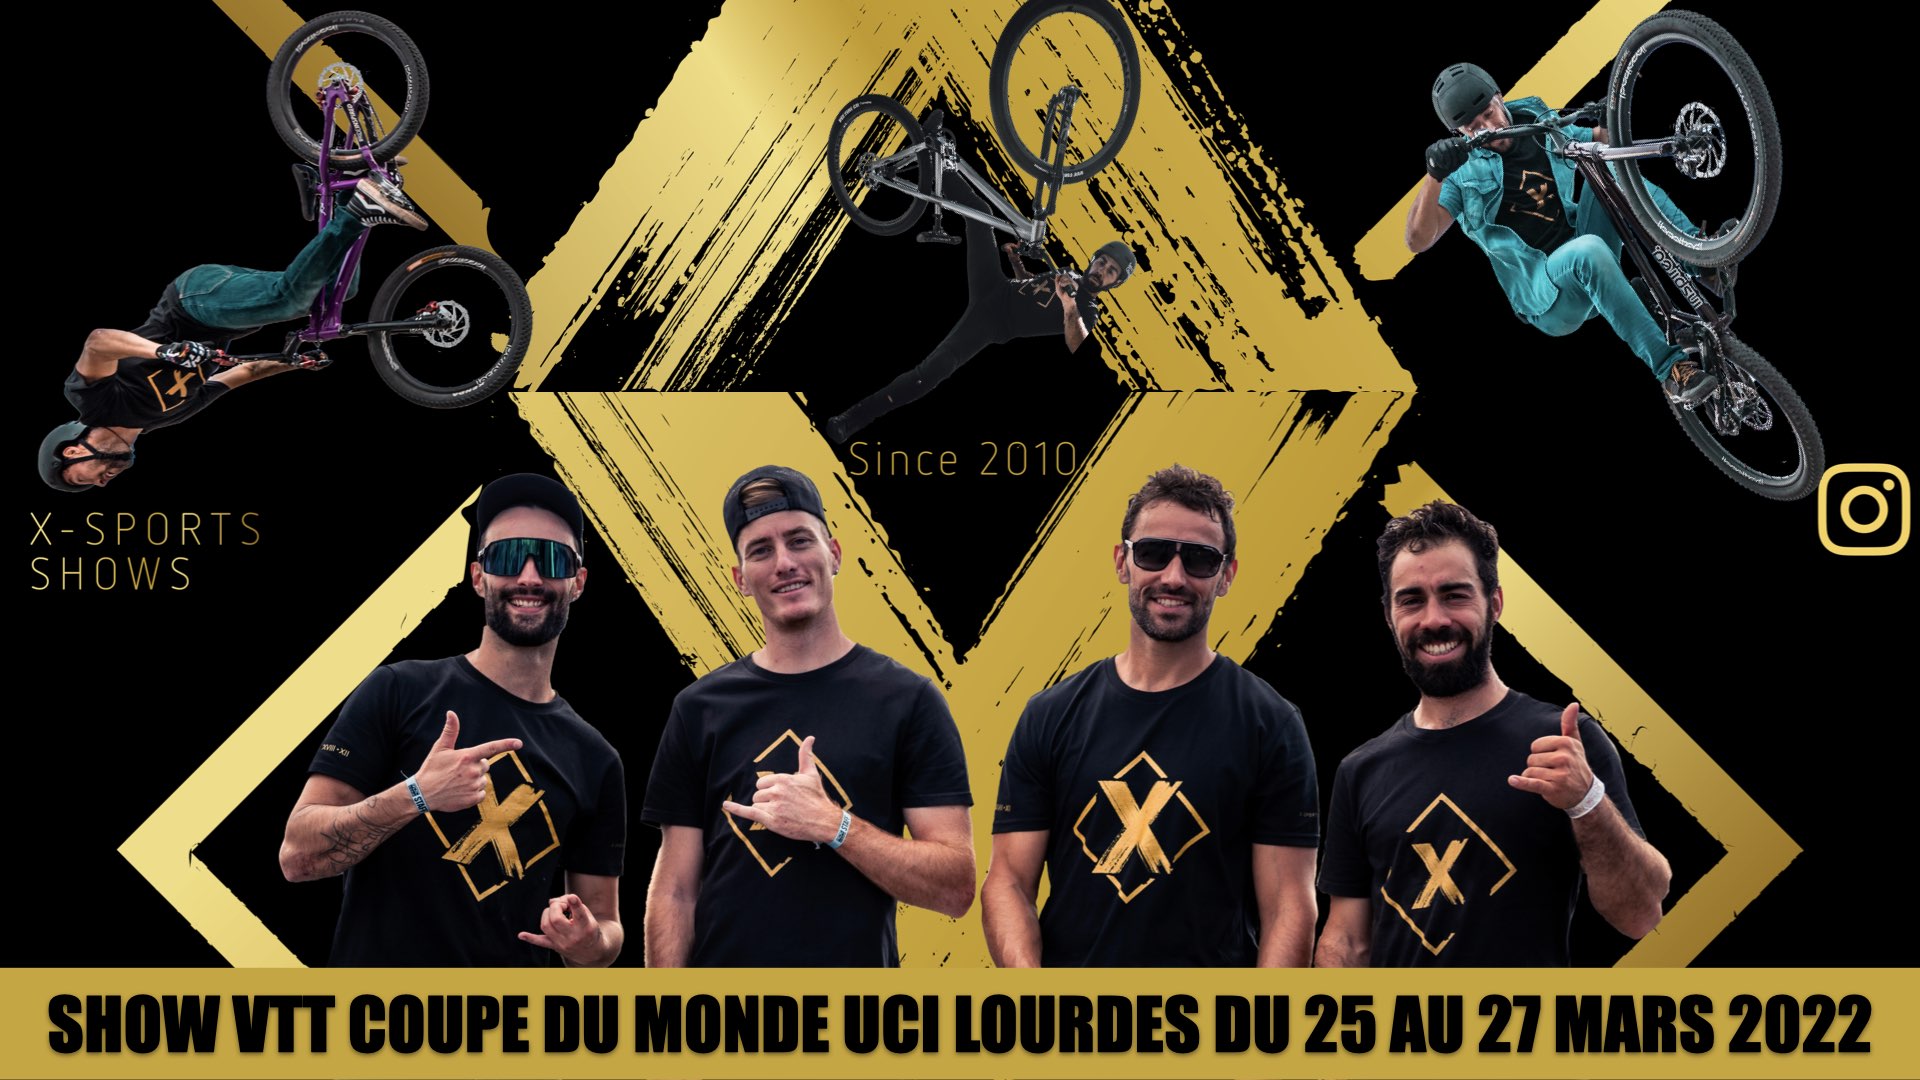 Teaser officiel show VTT coupe du monde UCI de Lourdes ( 04 mars 2022)